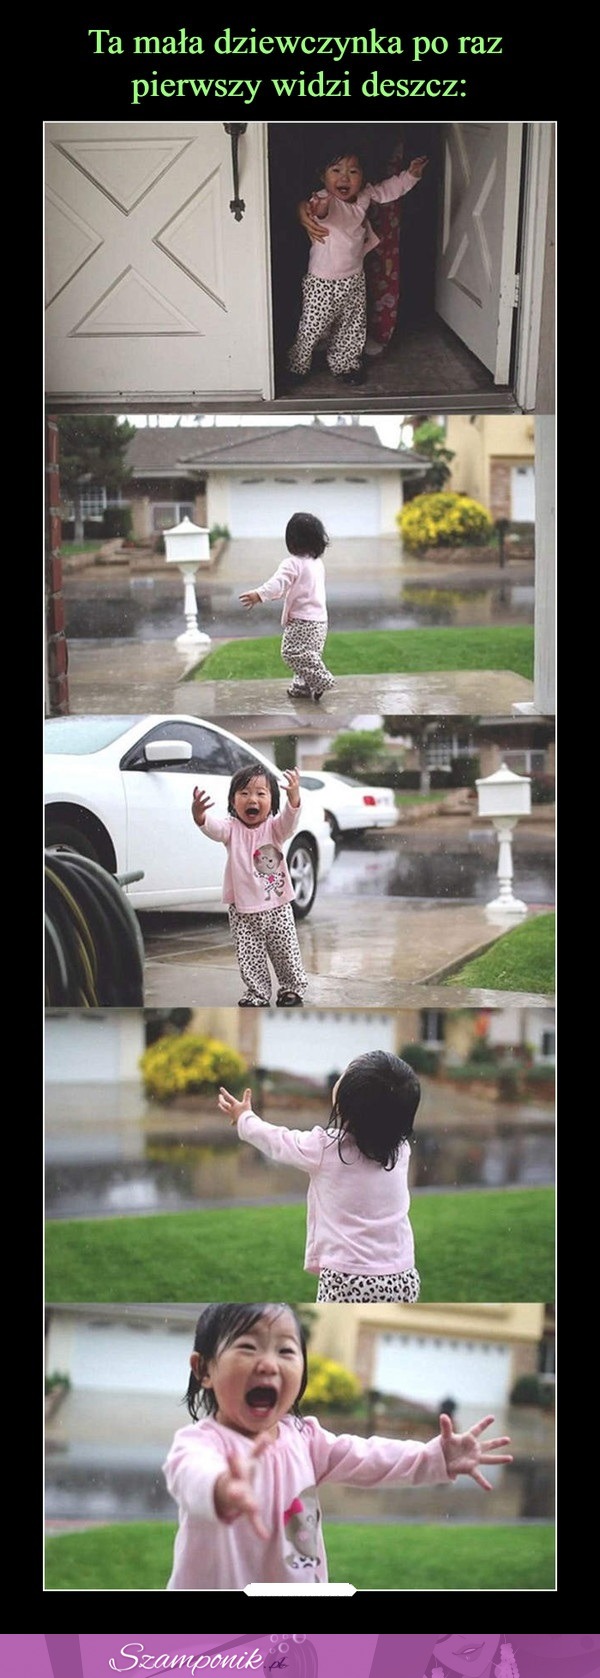 Ta mała dziewczynka po raz pierwszy widzi deszcz!